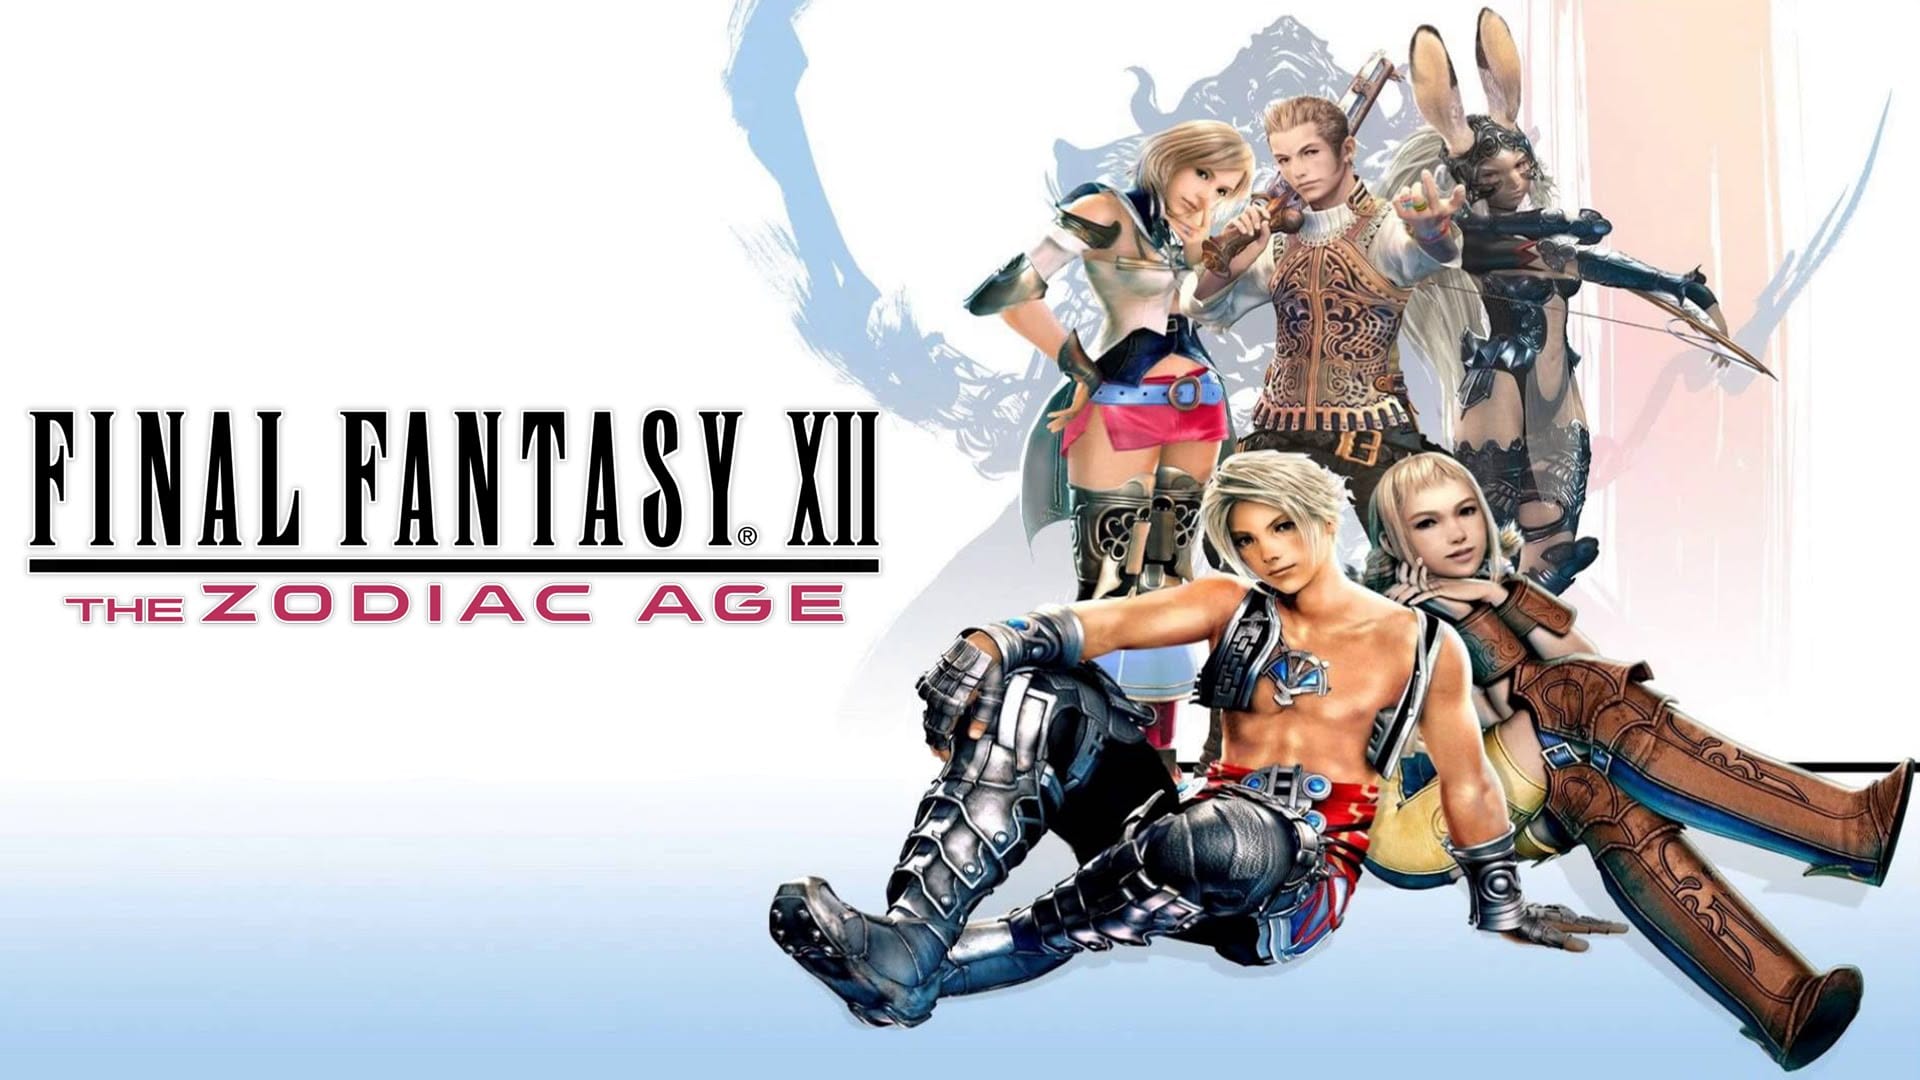 Ya sentimos la cercanía de Final Fantasy XII: The Zodiac Ages con un nuevo tráiler de lanzamiento.